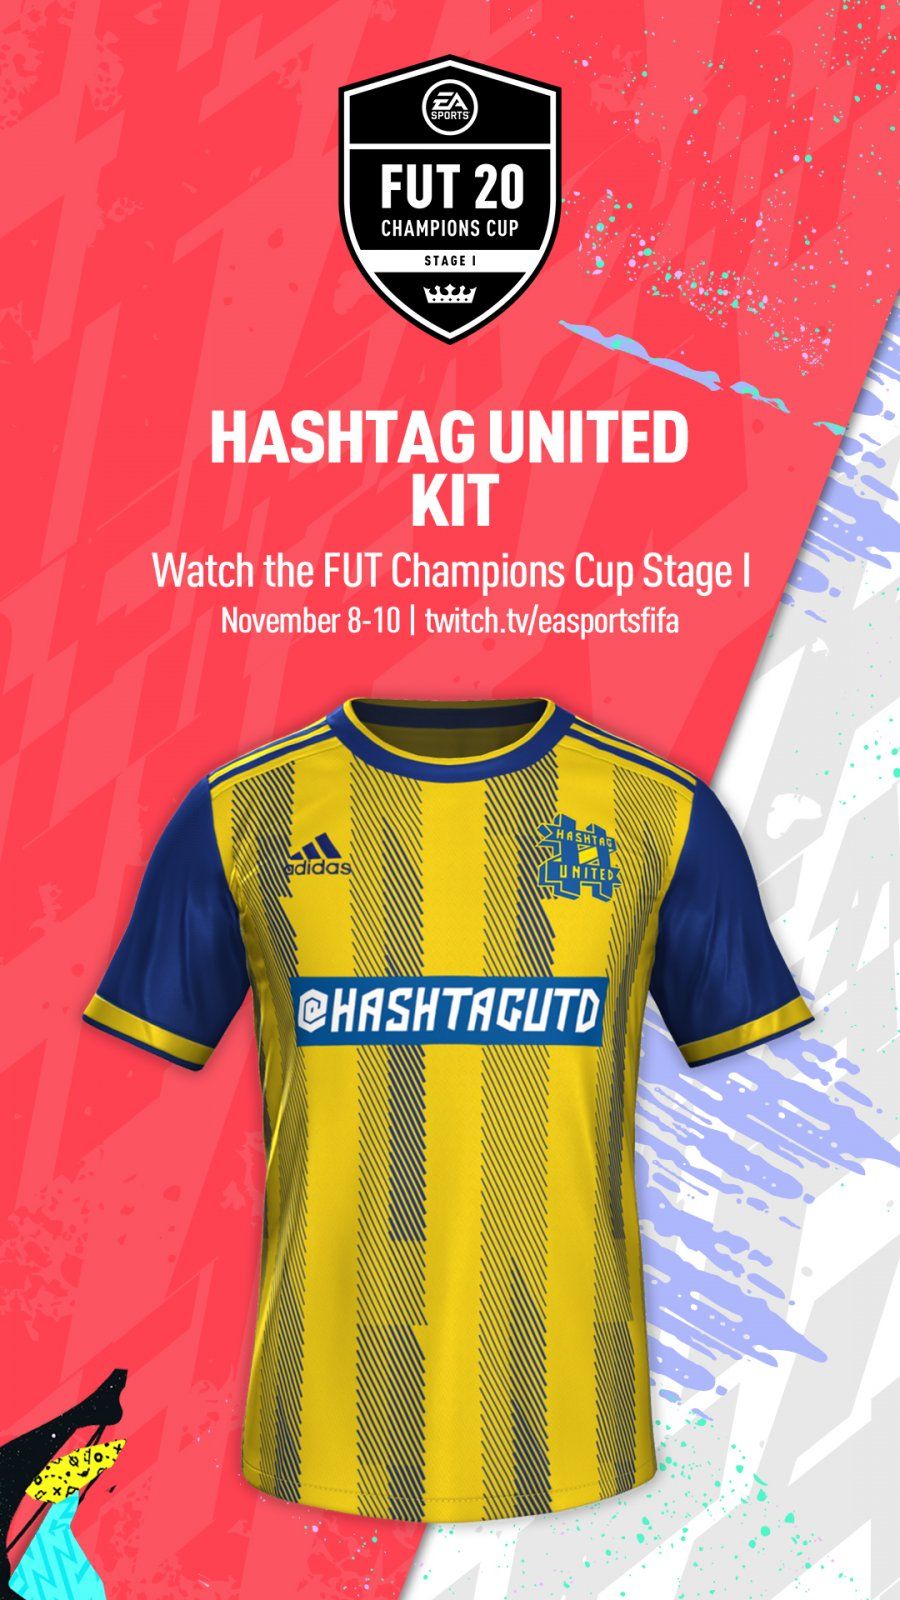 hashtag united jersey